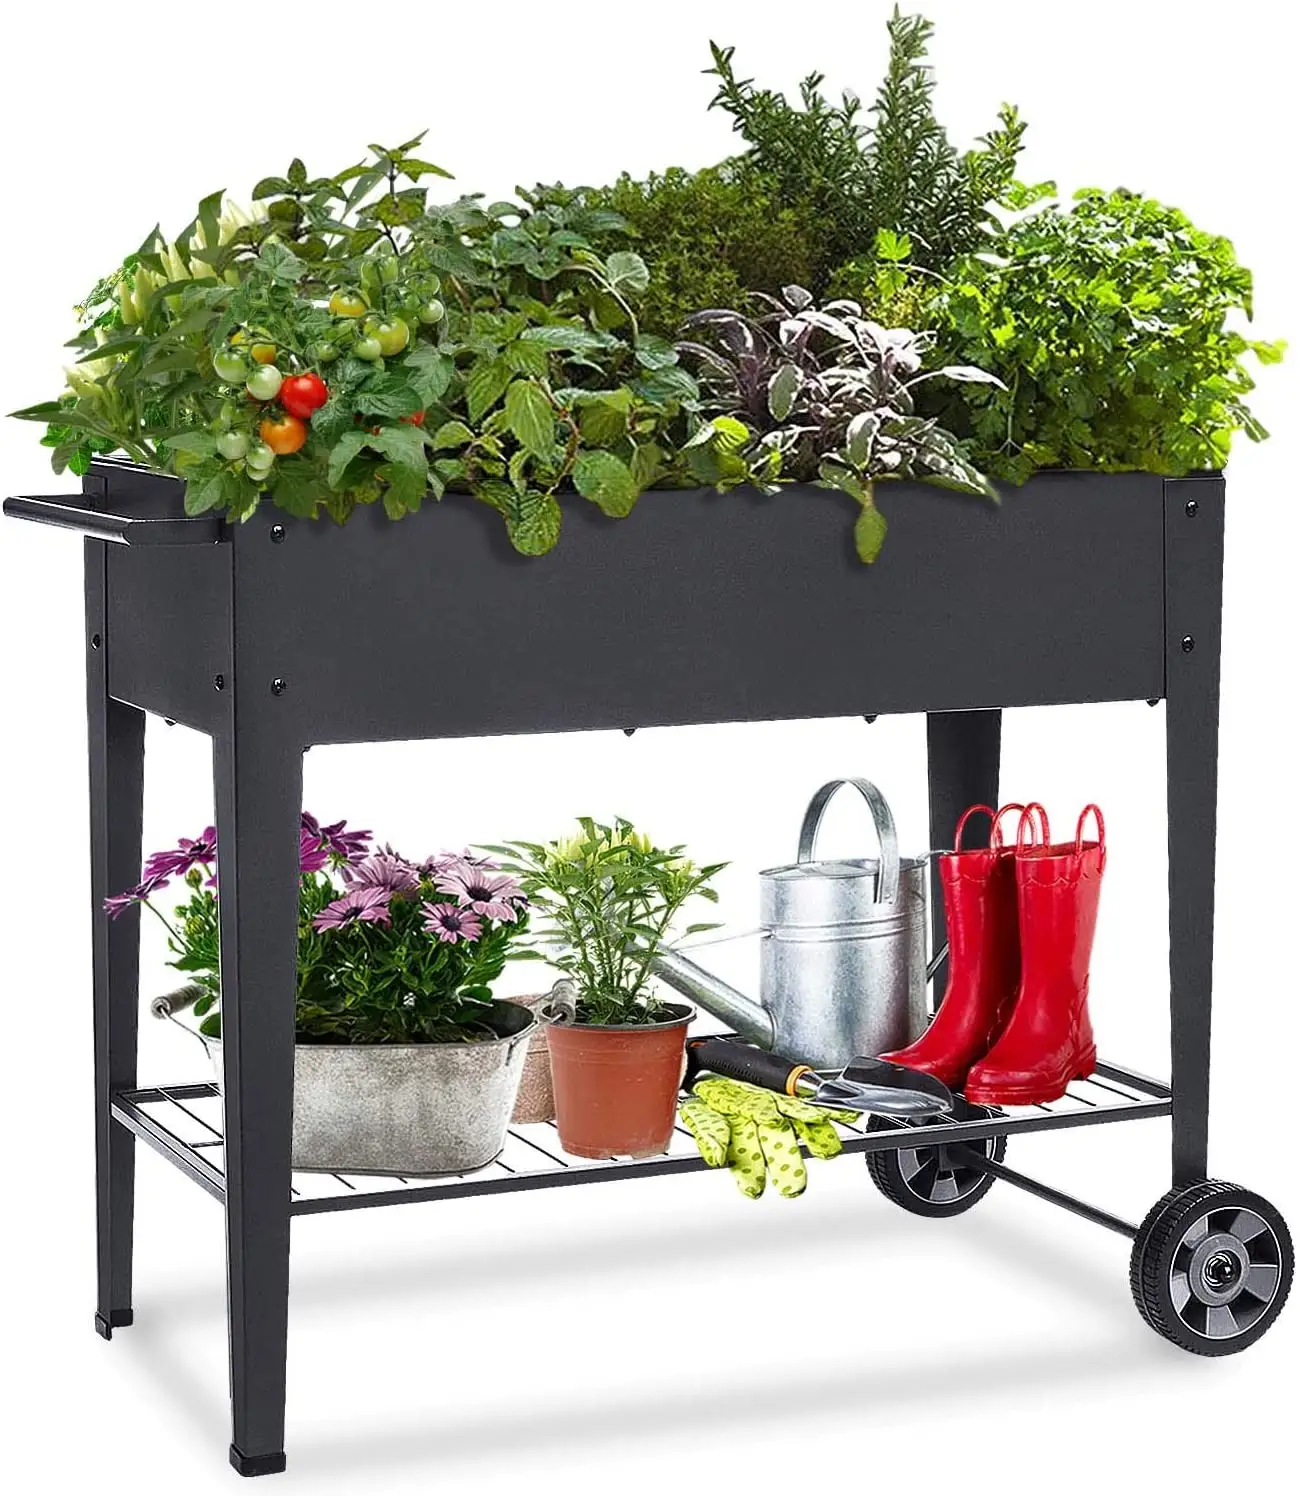 Jh-mech cama elevada de jardim, caixa plantadora de cama com pernas e rodas, para áreas externas, elevada, cama de jardim para legumes, ervas de flores